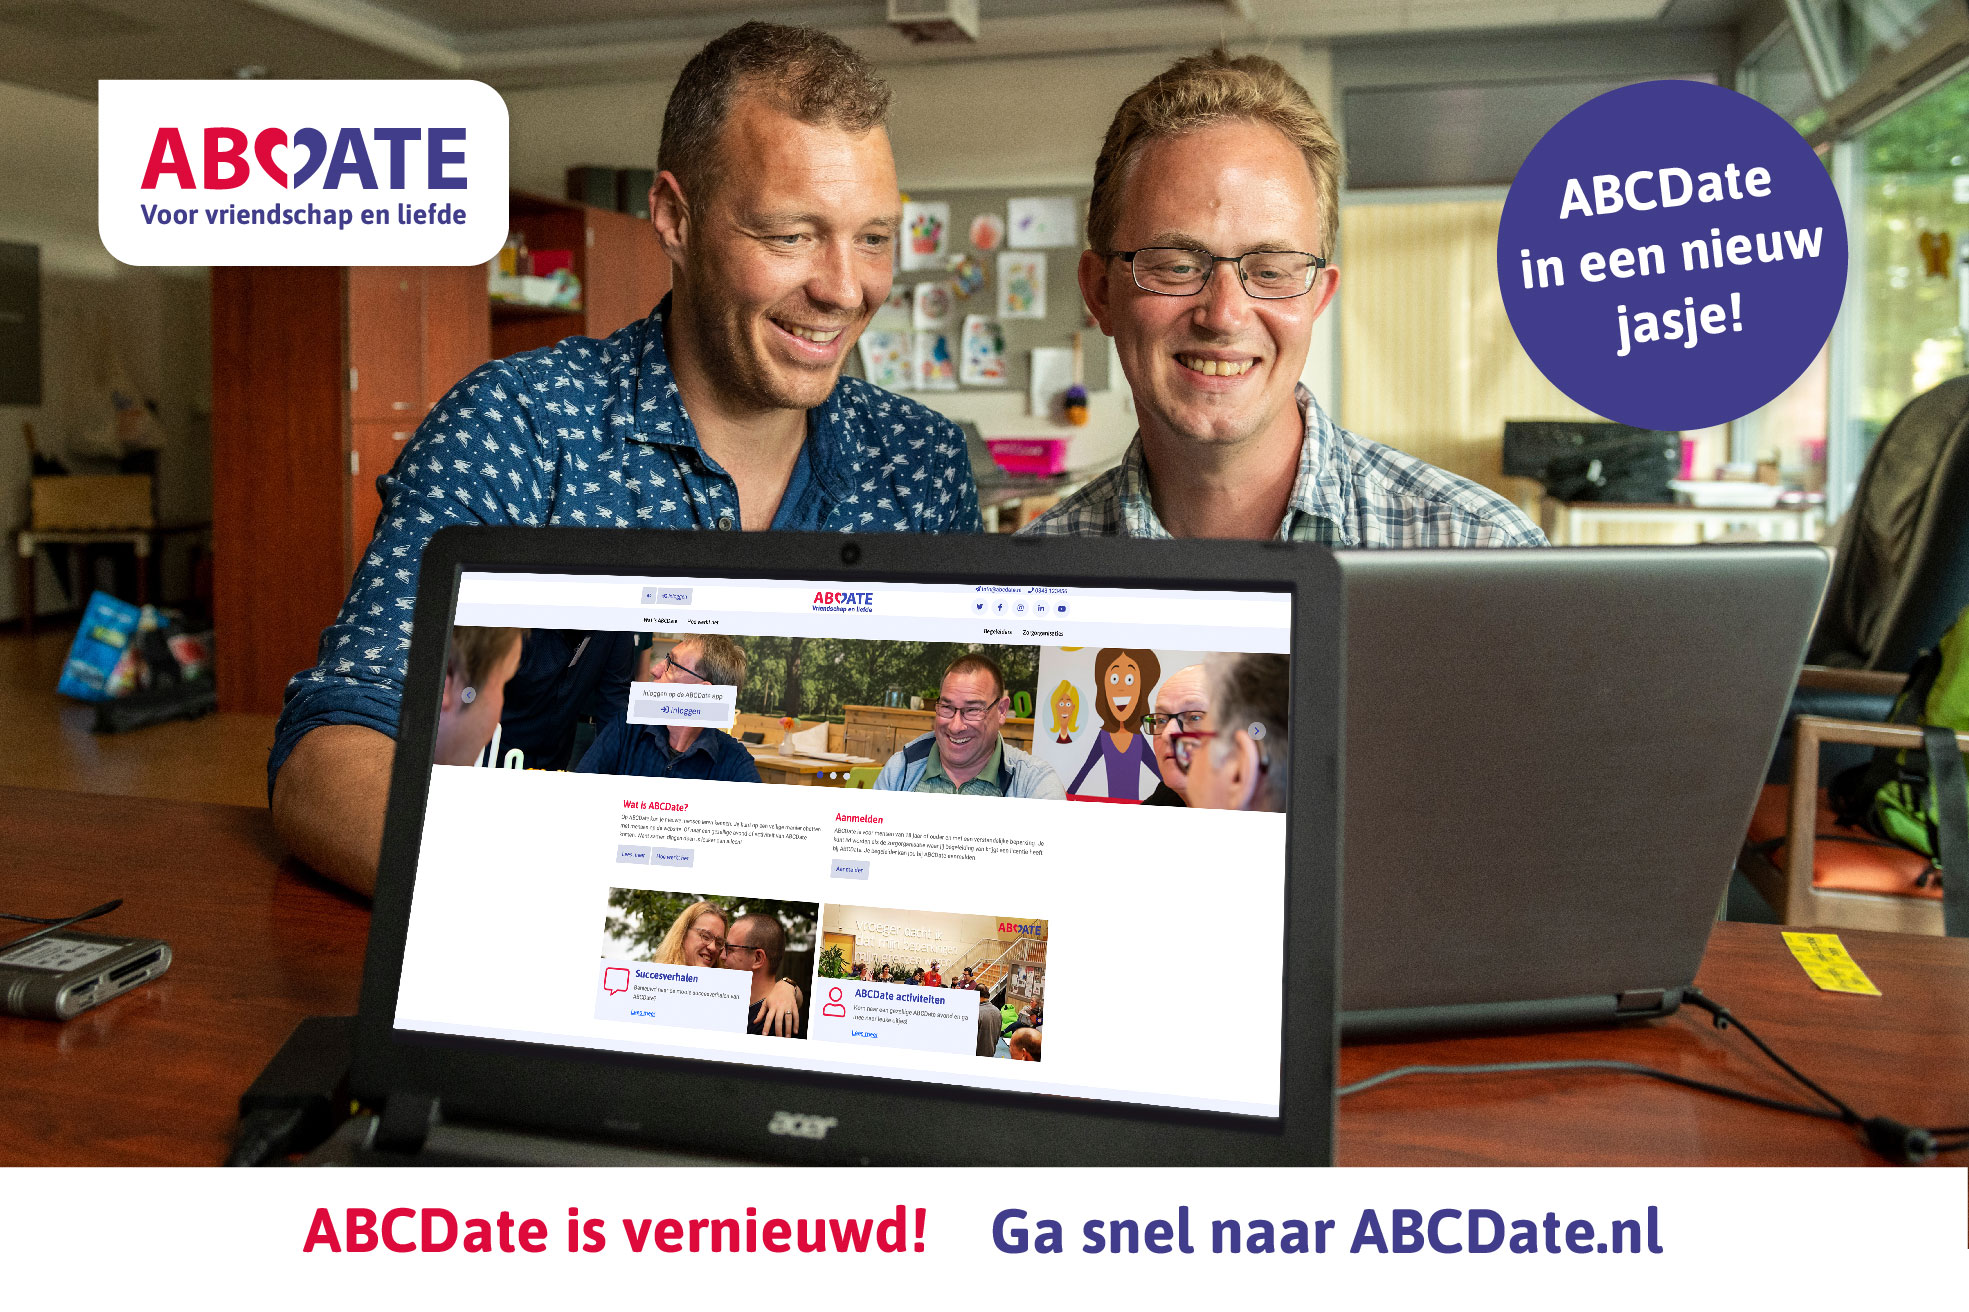 Veilig, eenvoudig en gelijkwaardig contact maken doe je met ABCDate.